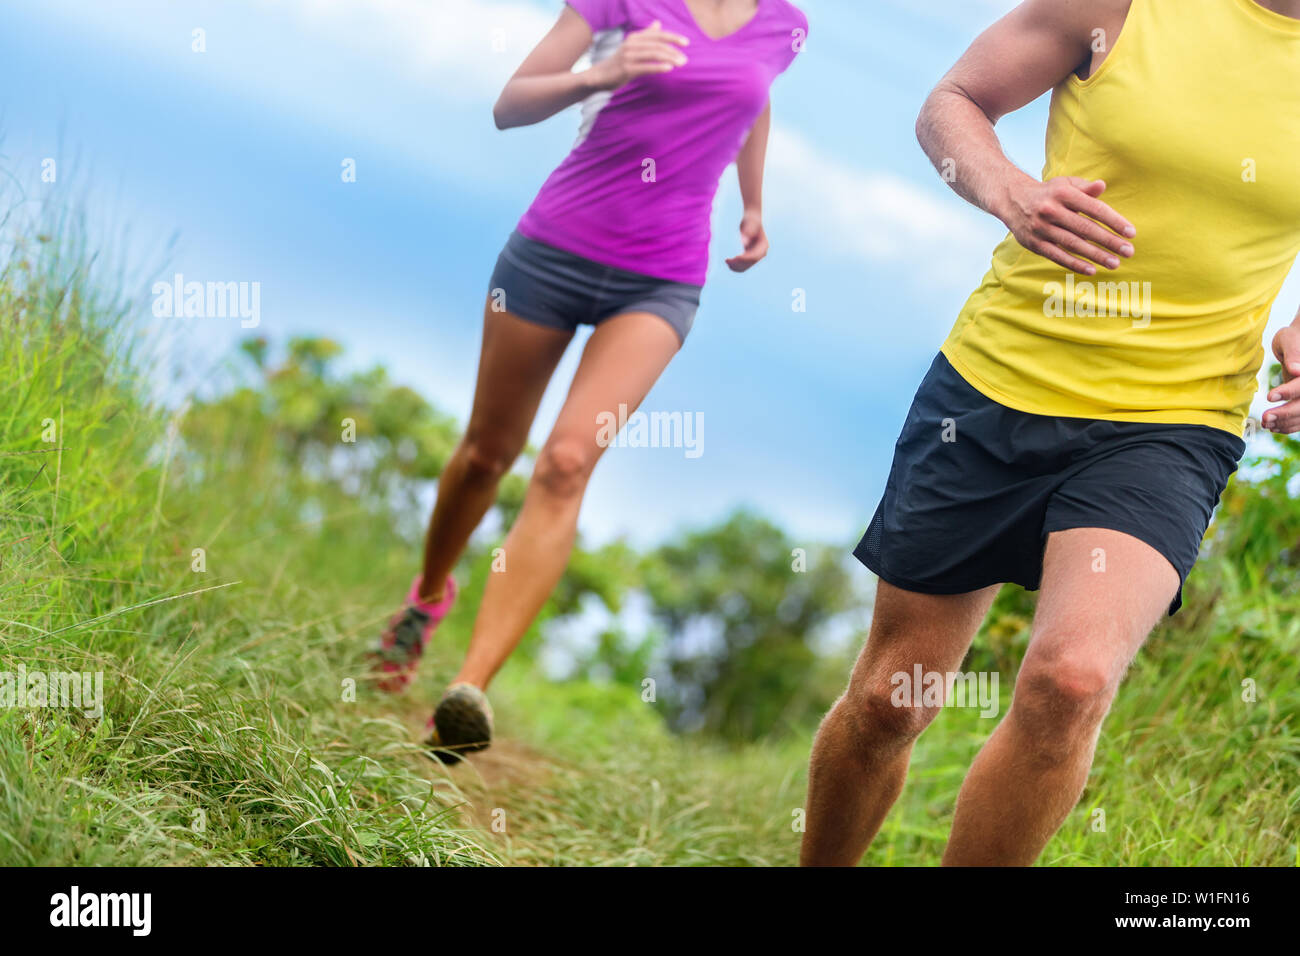 Fitness Sportler Trail Running - athletische Beine closeup untere Körper Ernte von Mann und Frau ausarbeiten. Sport Leute joggen im Zeitraffer Marathon Training auf dem Naturlehrpfad in Shorts Sportbekleidung. Stockfoto